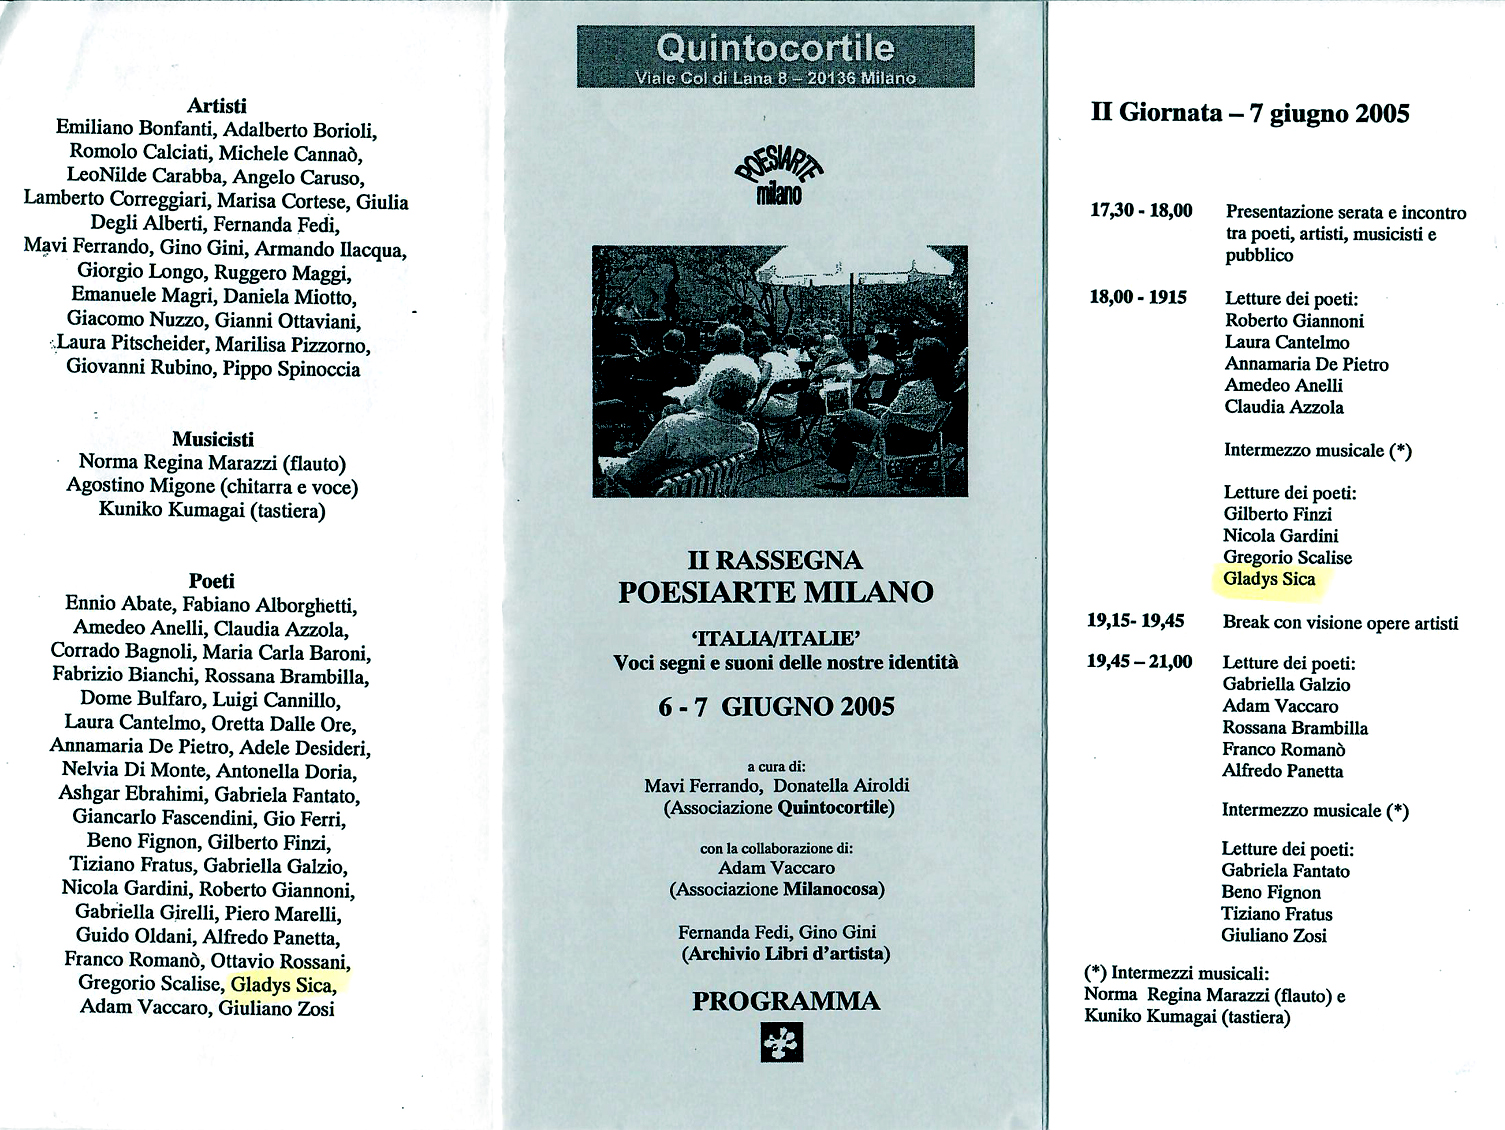 2005 - Reading, II Rassegna 'Italia-Italie', a cura di Quintocortile e Milanocosa, con Finzi, Sica, Vaccaro, Brambilla, Romanò, Fantato, ecc. Milano.